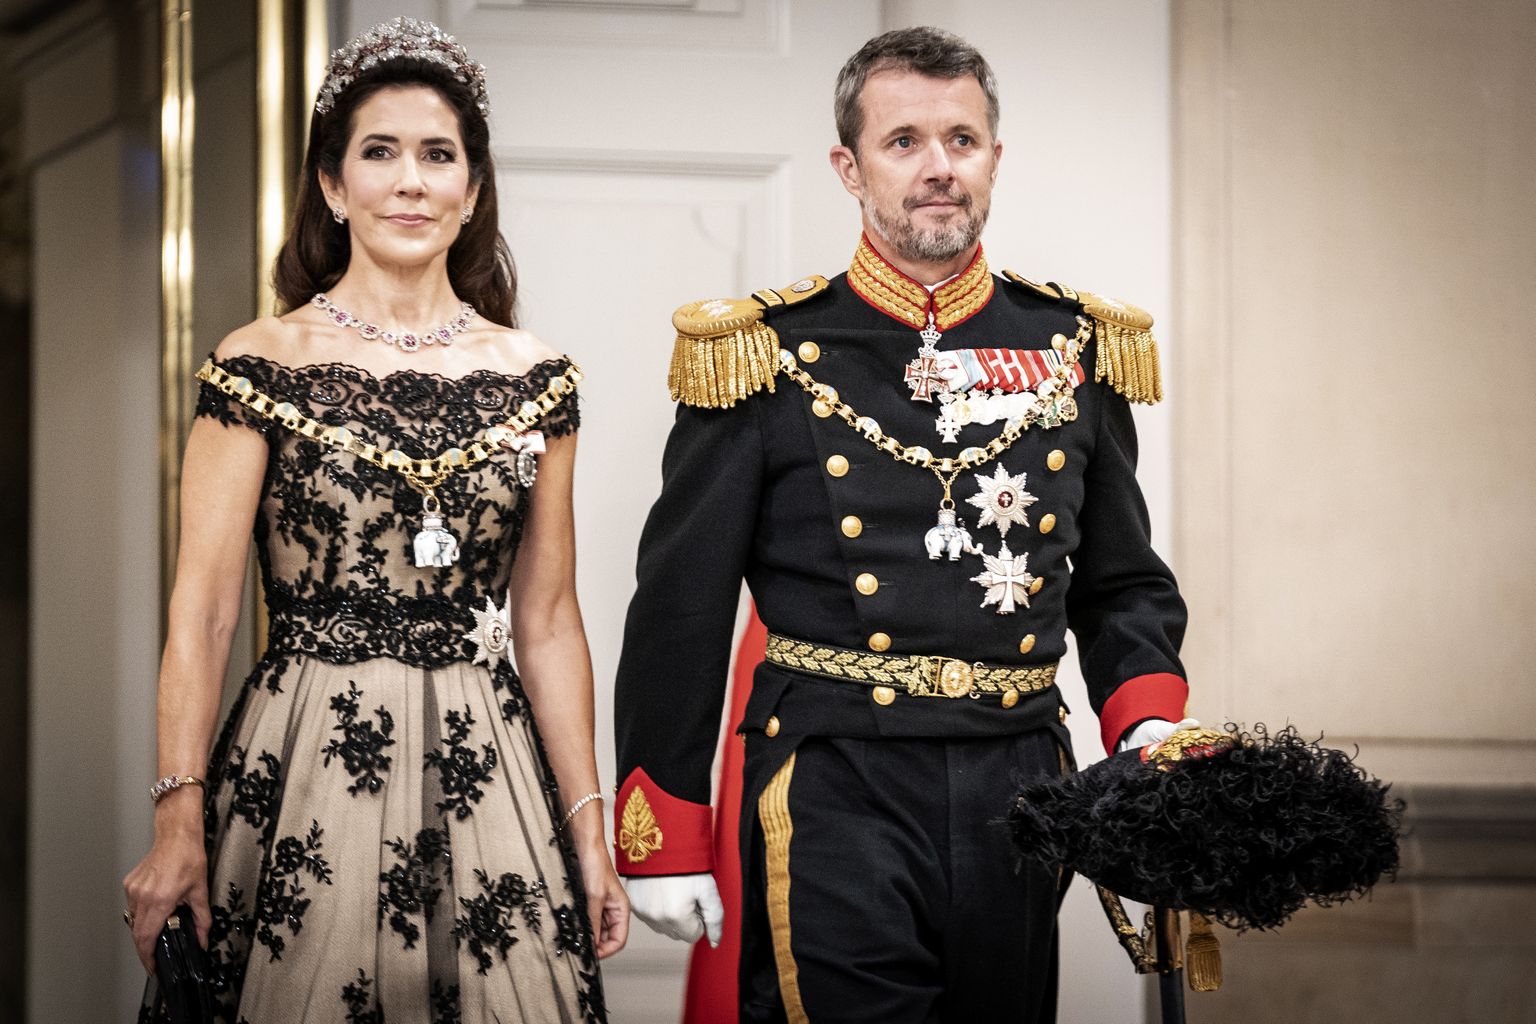 Taani kroonprints Frederik ja kroonprintsess Mary saabumas 11. septembril 2022 Kopenhaagenis Christiansborgi paleesse, kus toimus Taani kuninganna Margrethe II 50. valitsemisaasta troonijuubeli bankett